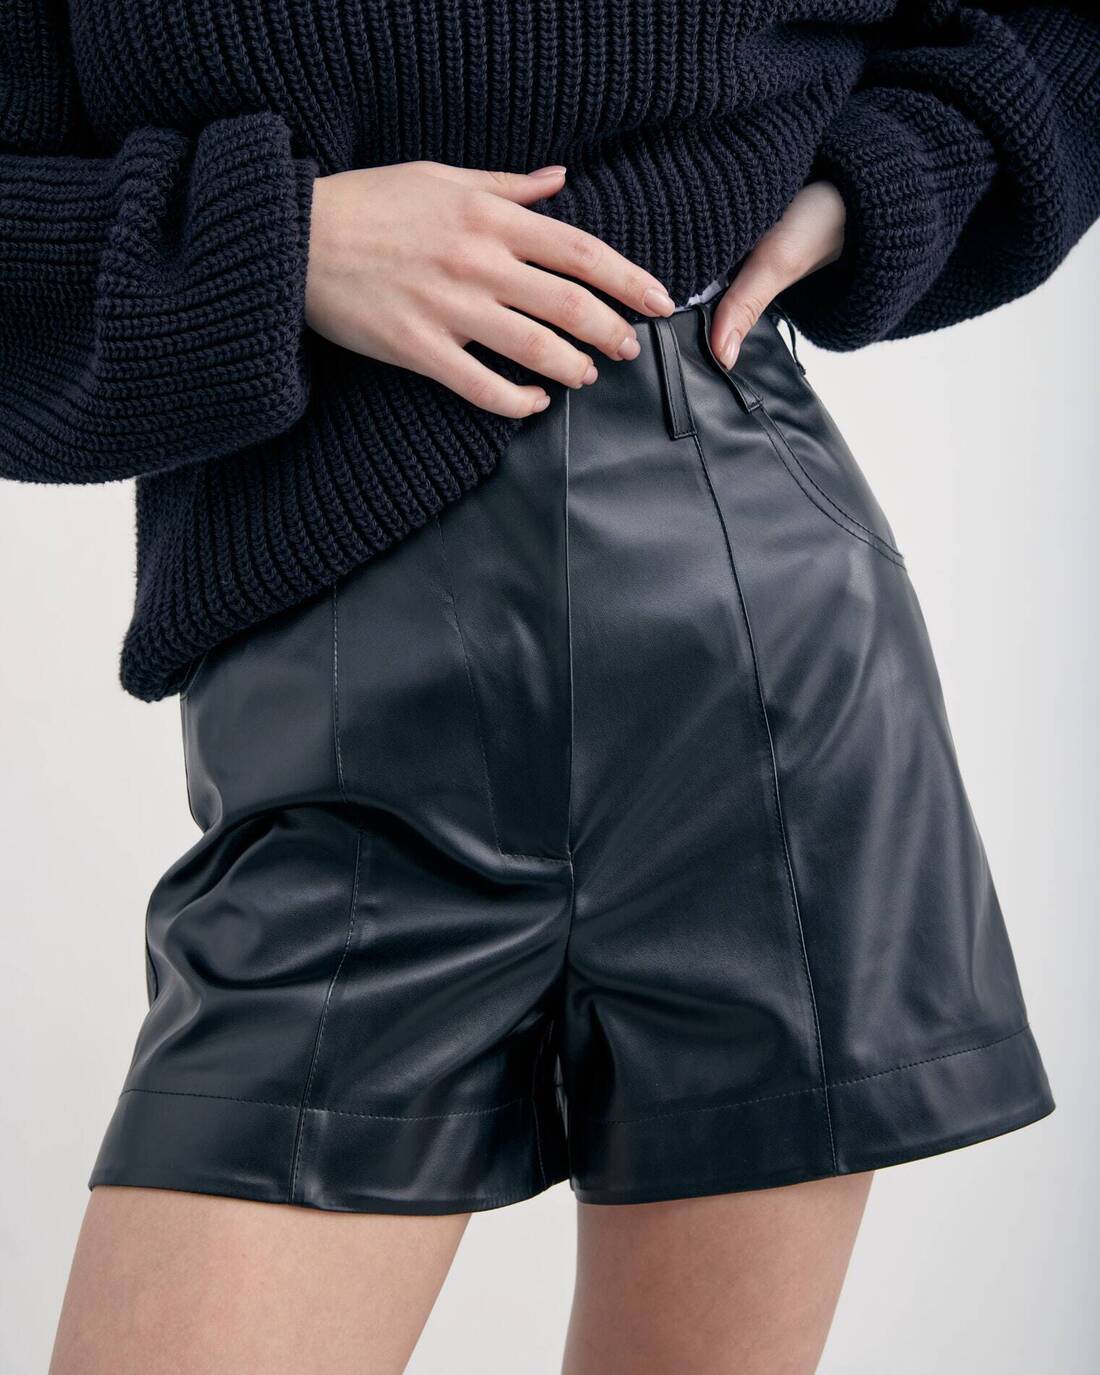 Eco leather shorts